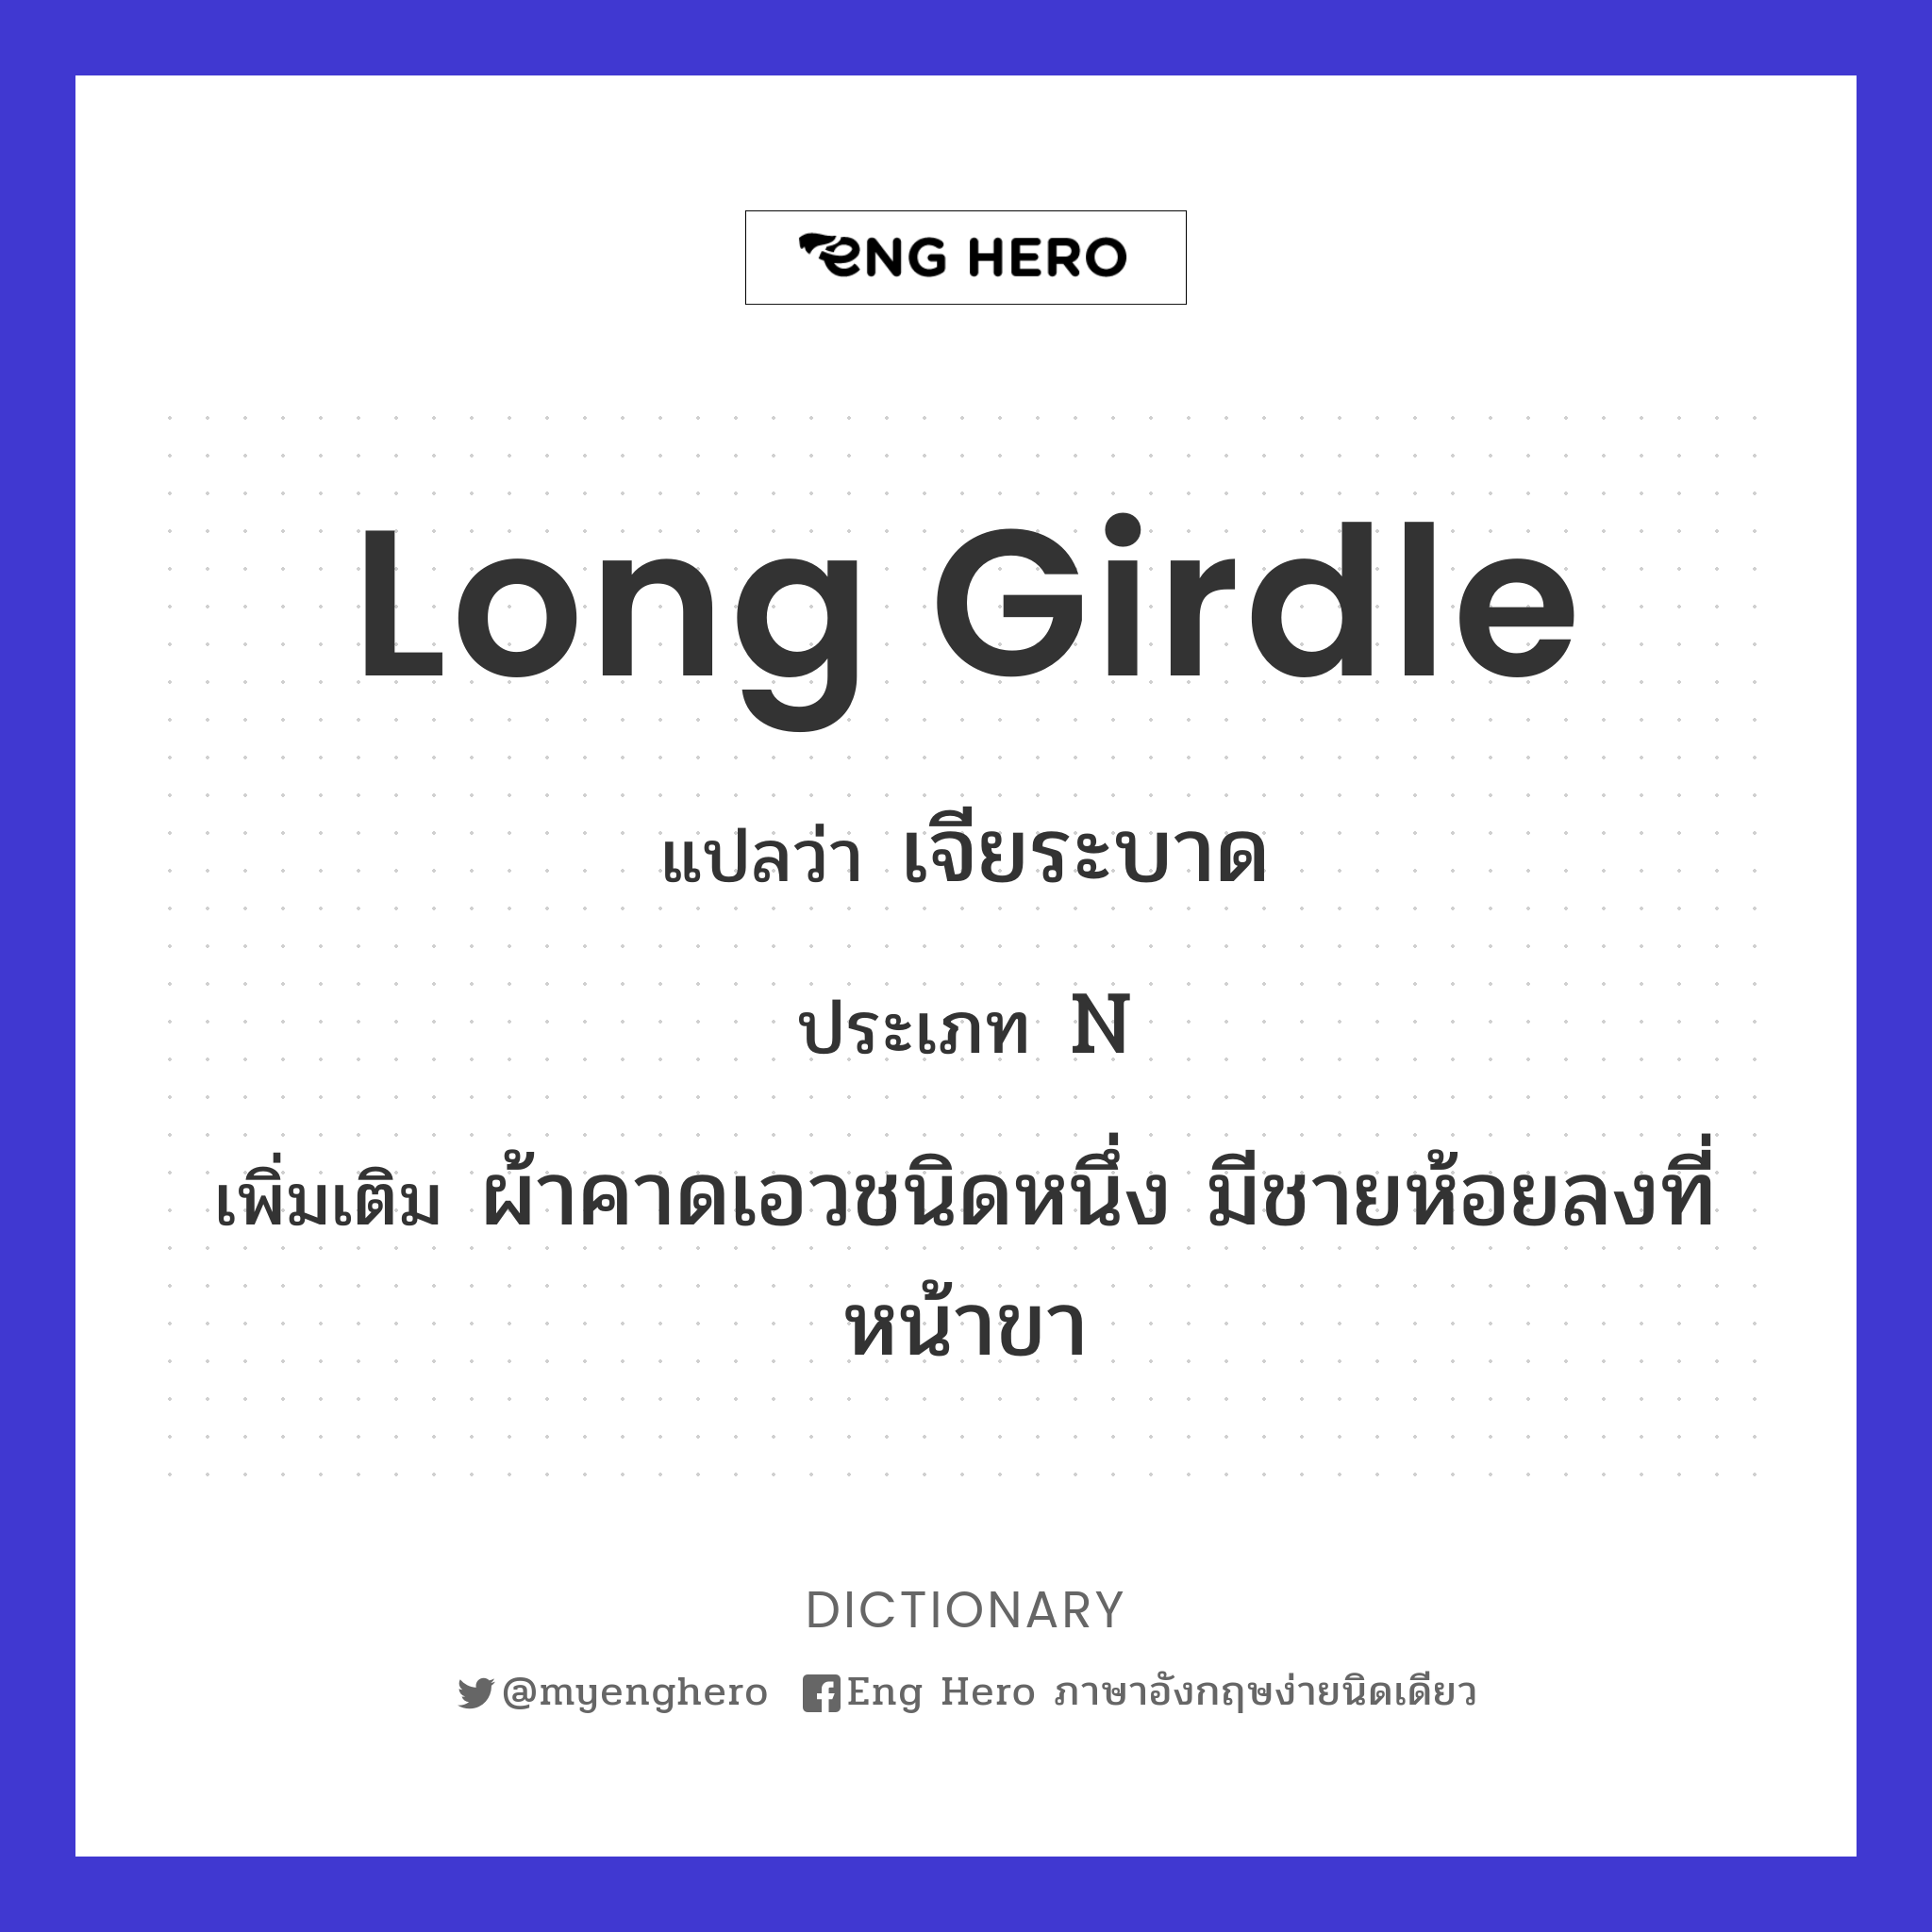 long girdle